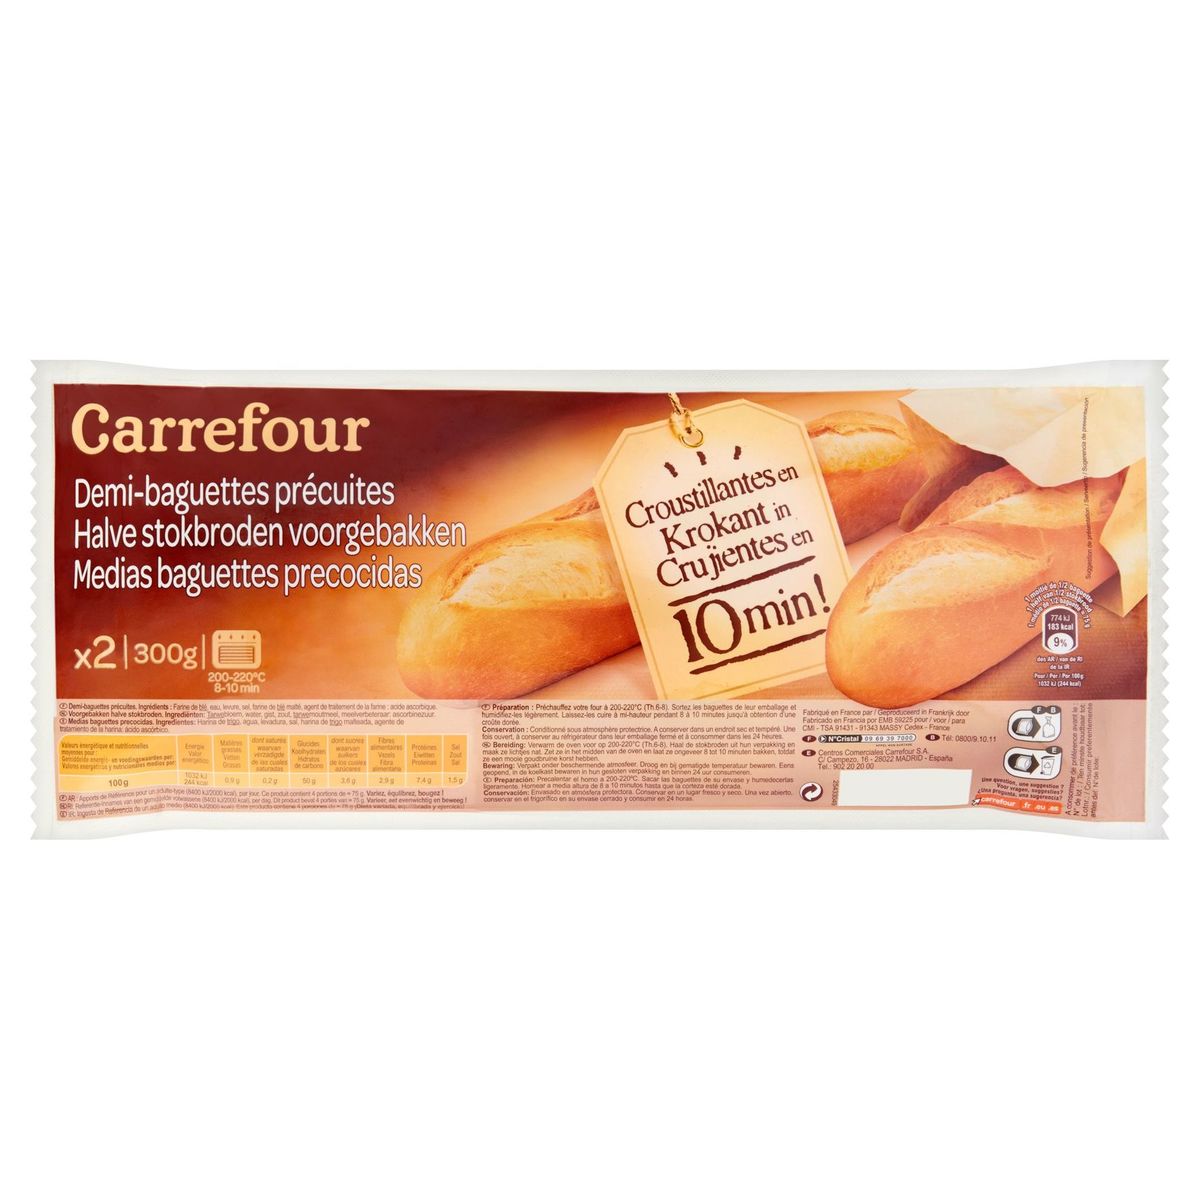 Carrefour Halve Stokbroden Voorgebakken 2 Stuks 300 g